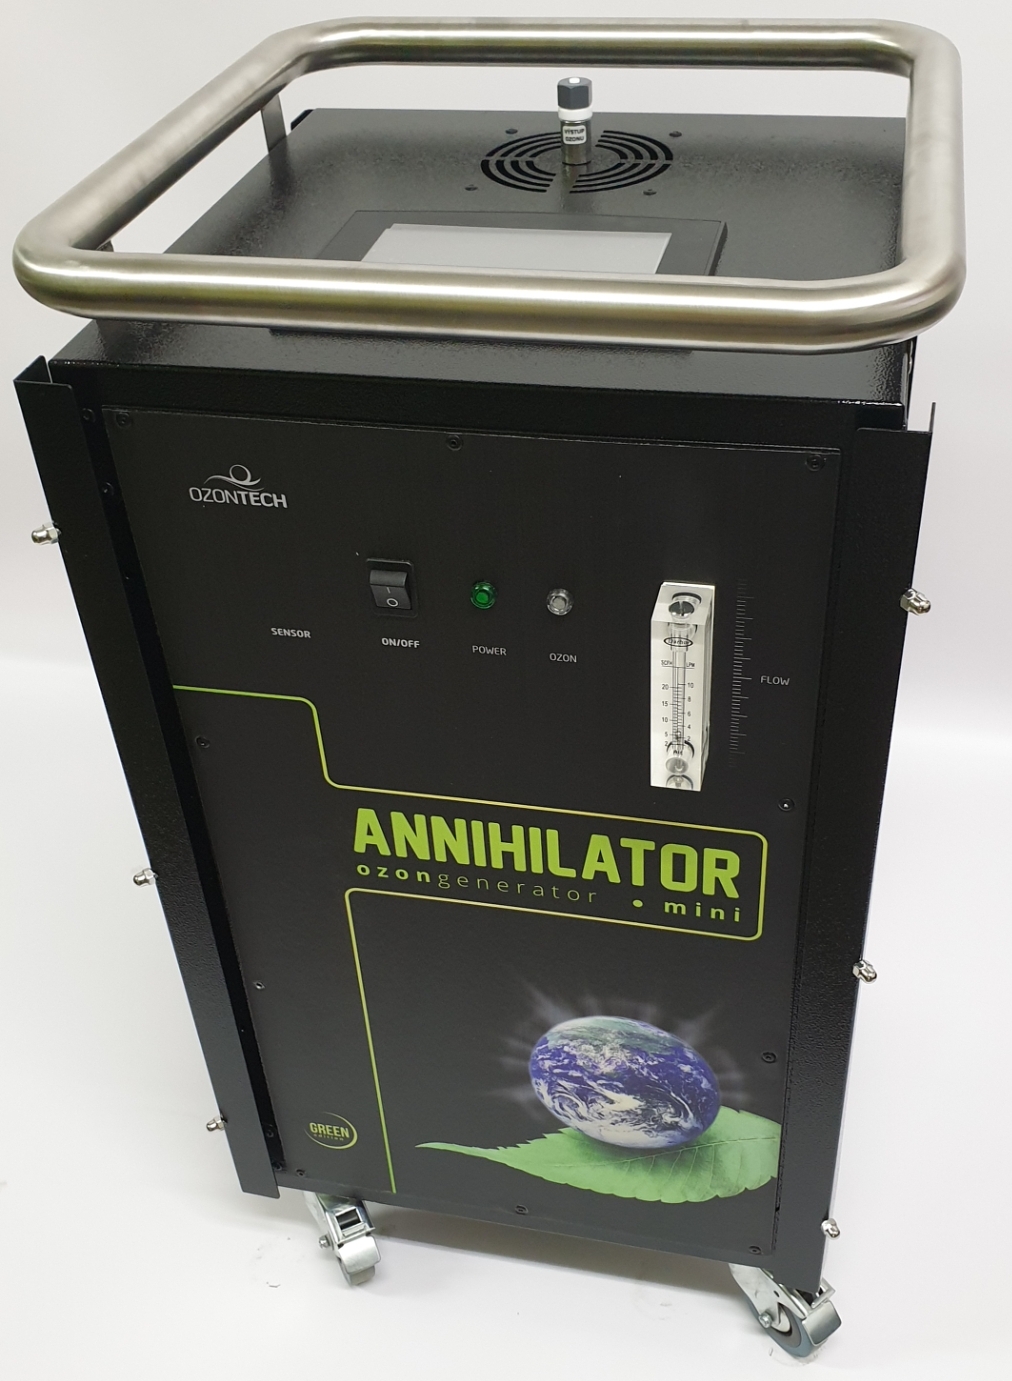 Zařízení ANNIHILATOR s unikátní technologii čištění ozonem